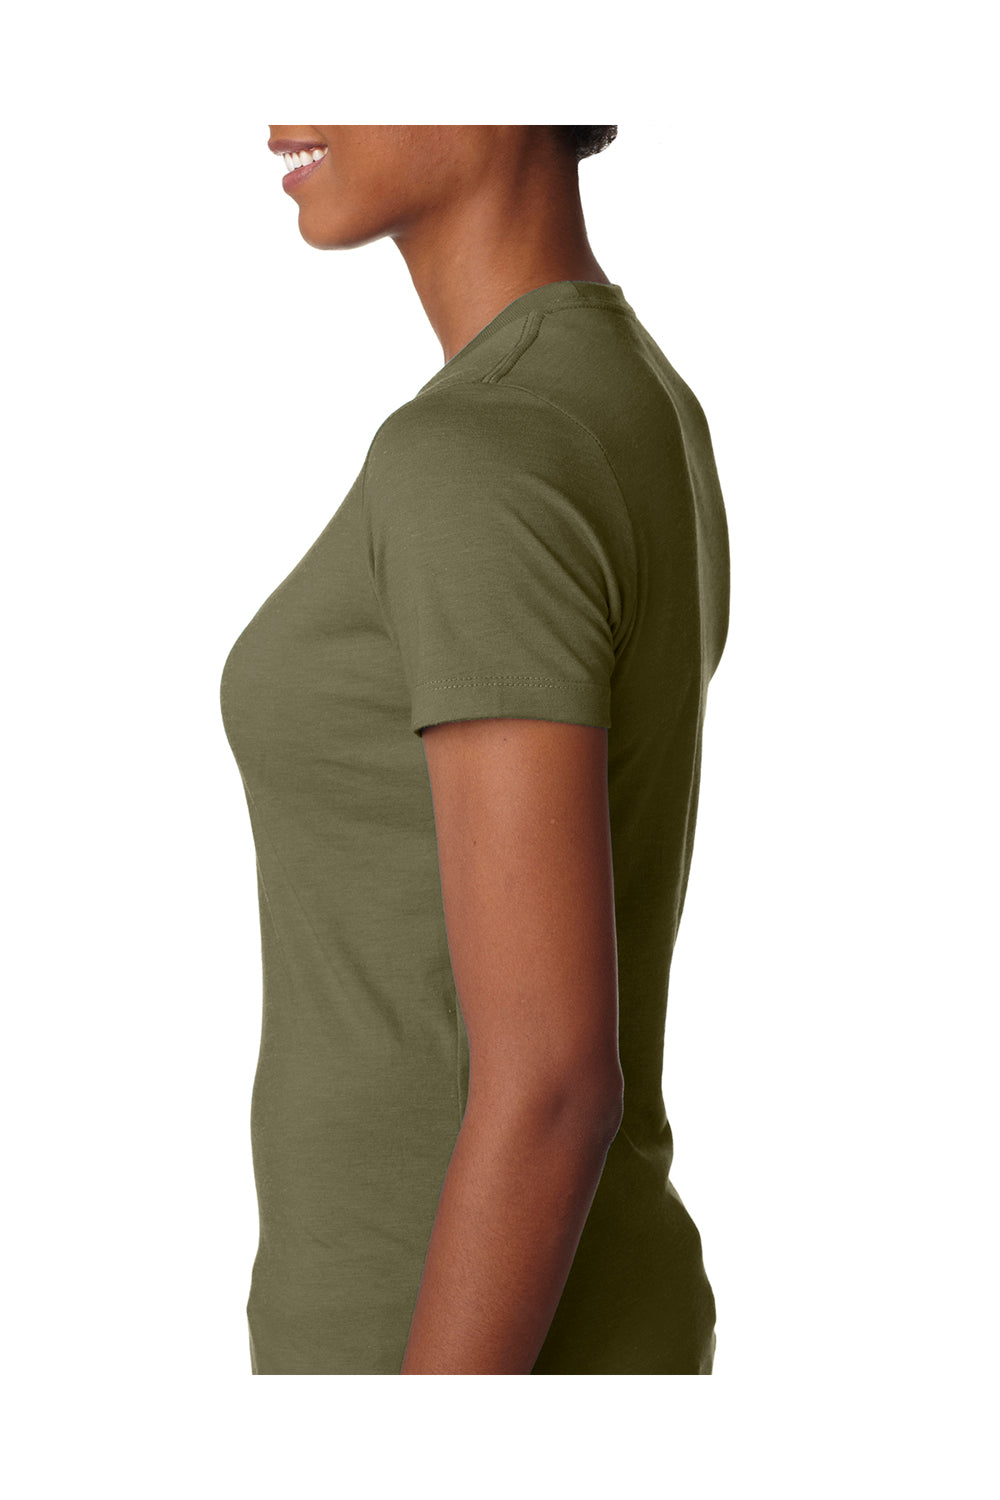 Next Level 6610 Womens CVC Jersey Short Sleeve Crewneck T-Shirt Military Green Side